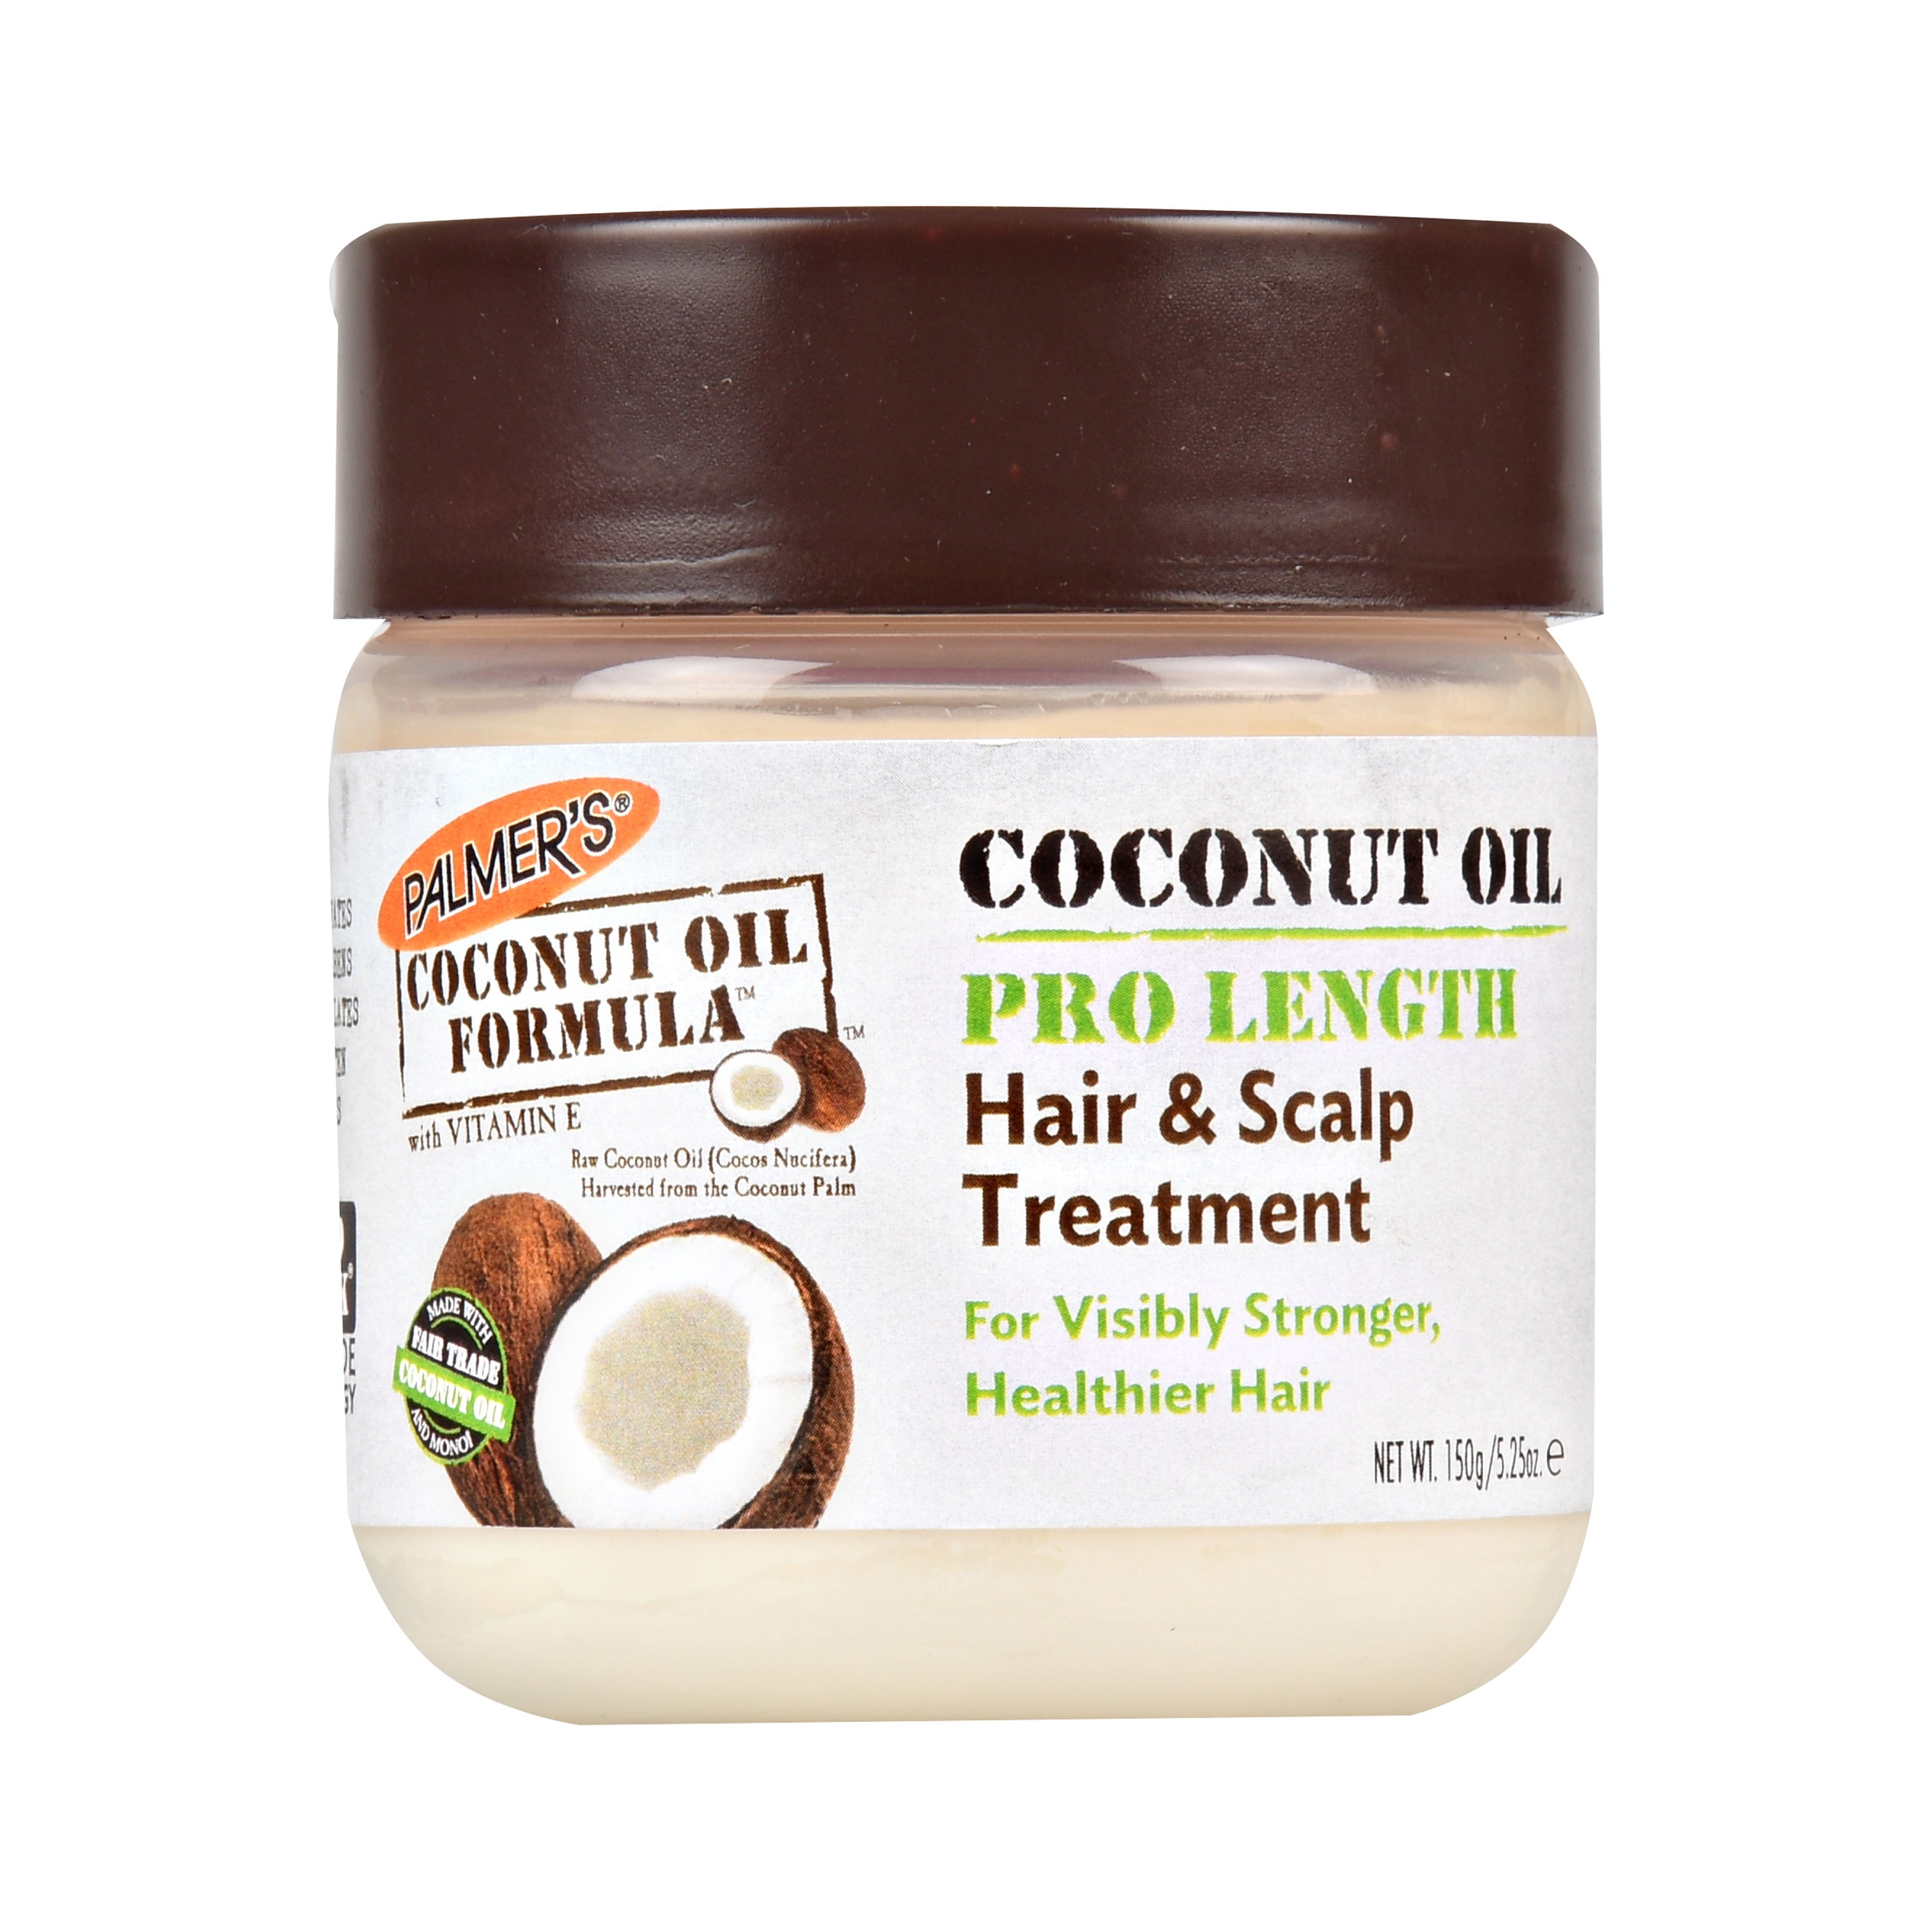 Palmer's Coconut Oil Formula Pro Length Hair & Scalp Treatment 6.7oz ...